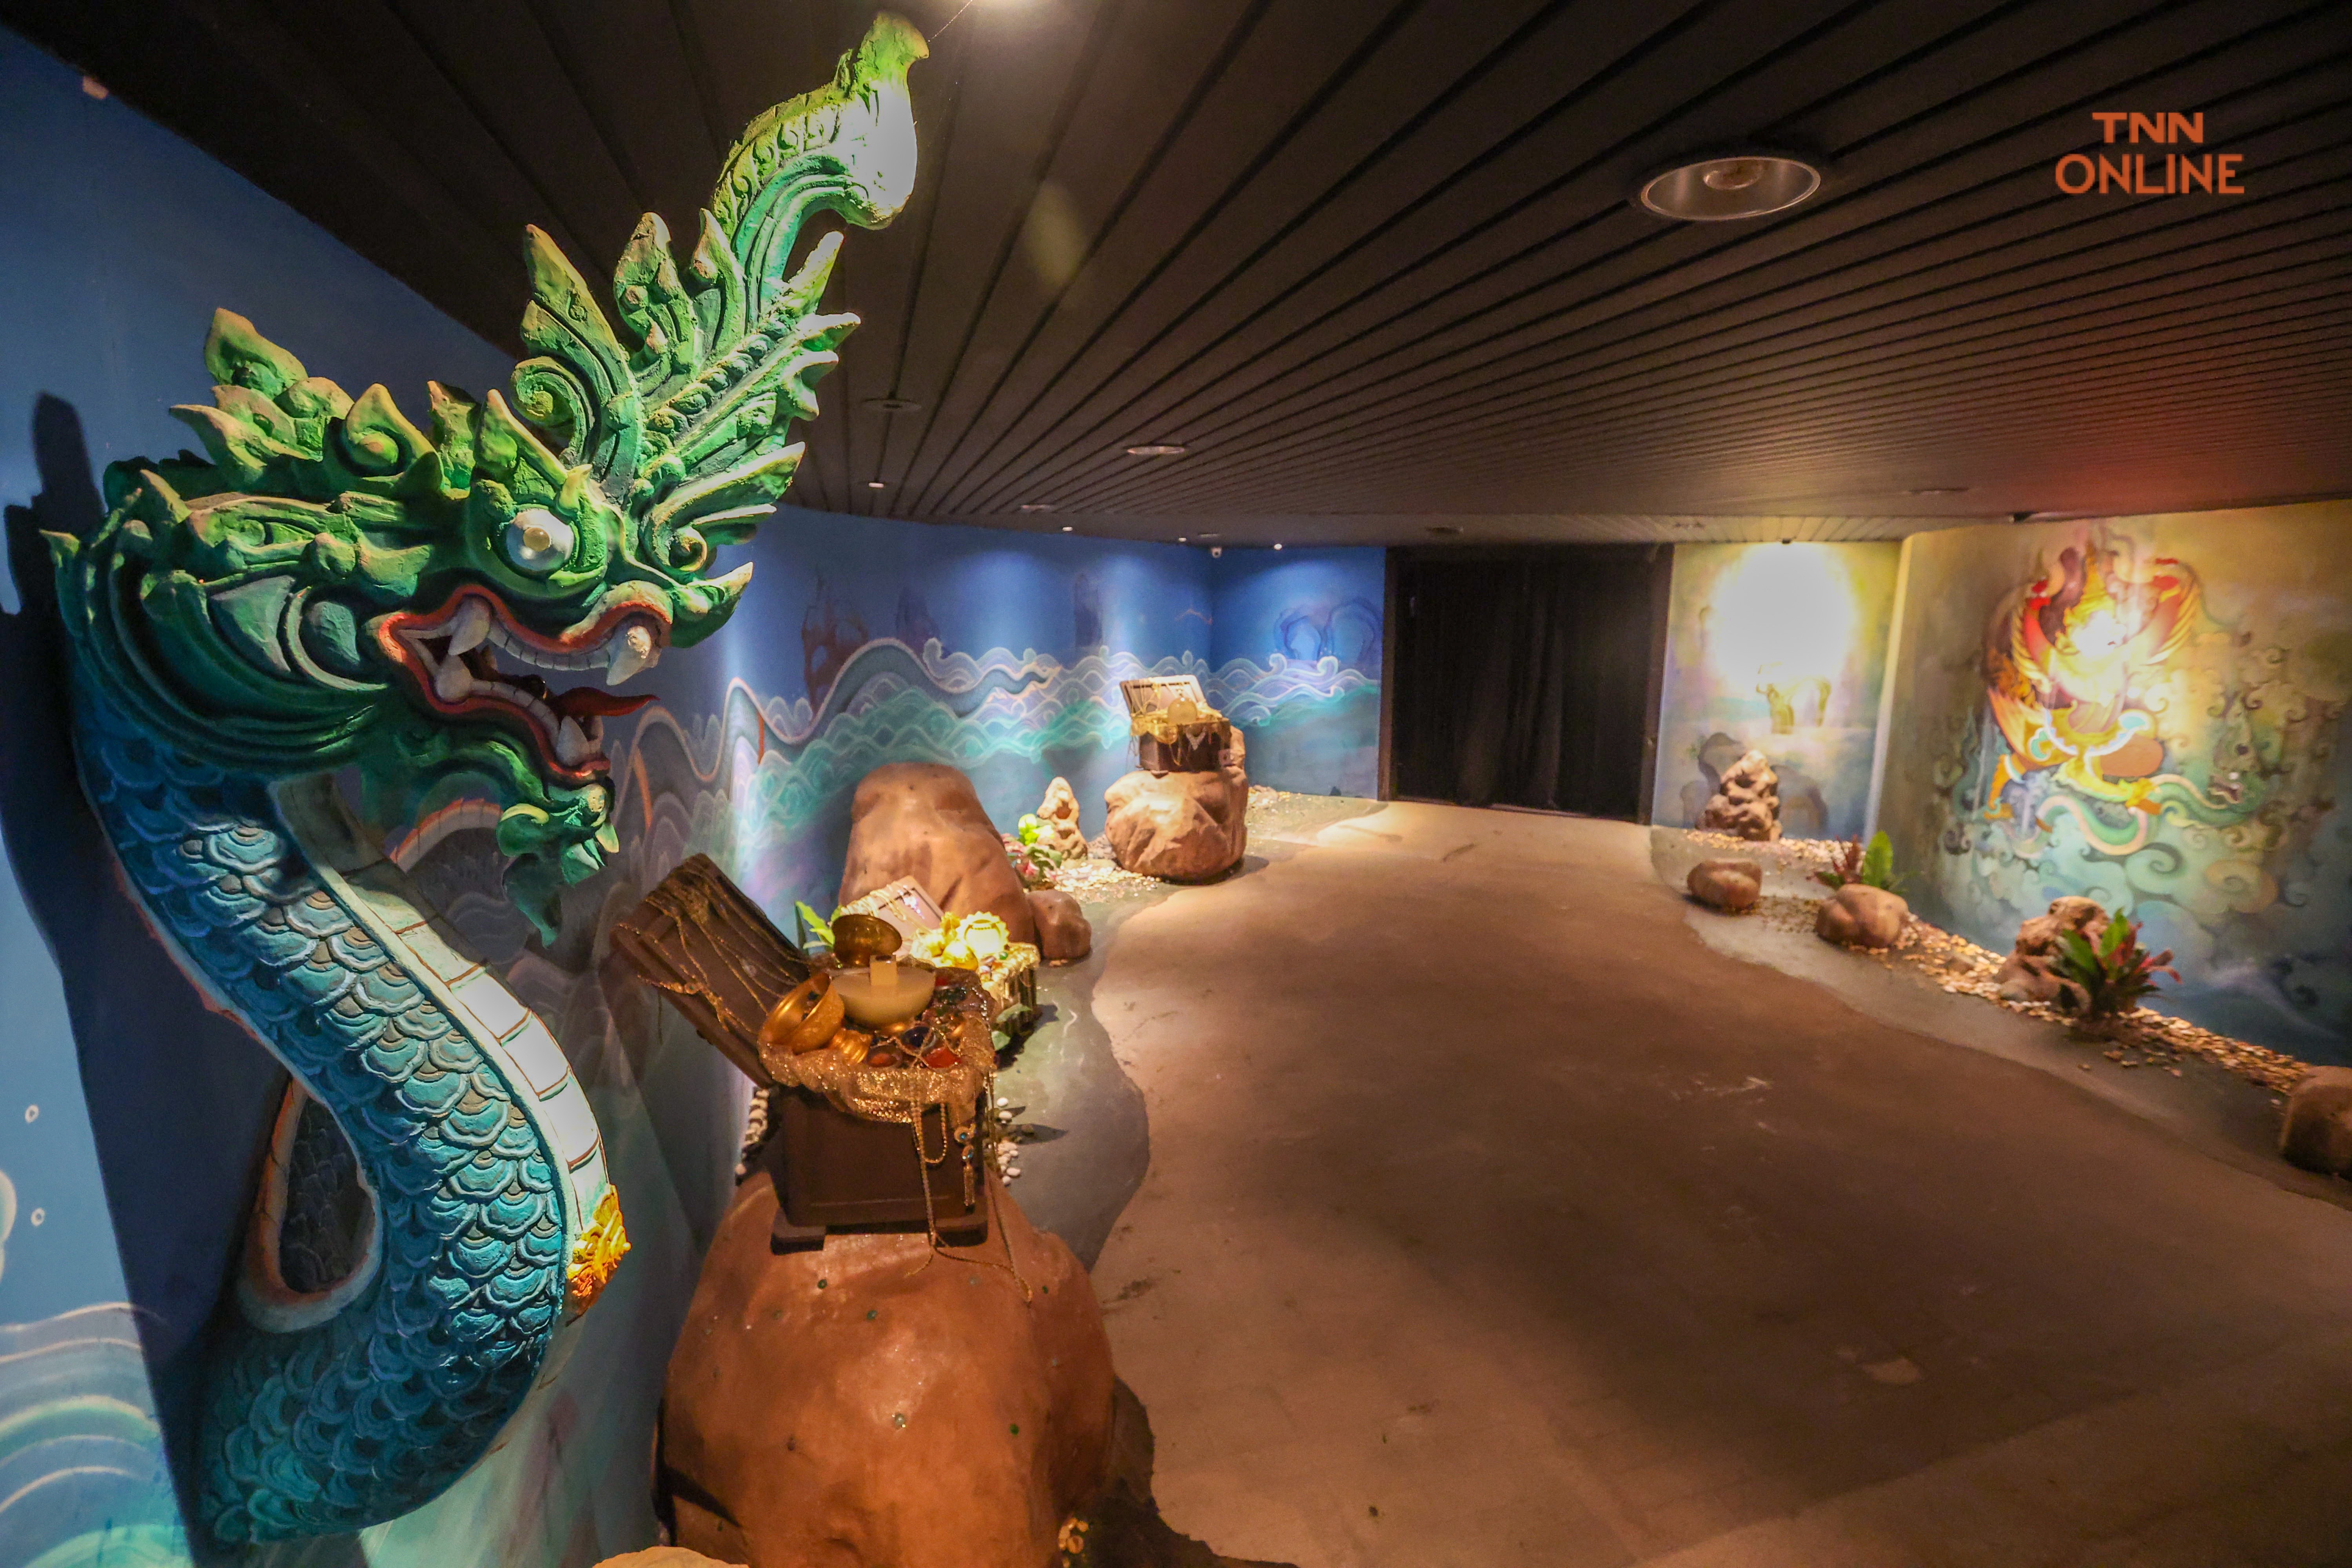 พิพิธภัณฑ์ครุฑแห่งเดียวในอาเชียนจุดประกายการเรียนรู้ผ่านนิทรรศการสื่อผสม